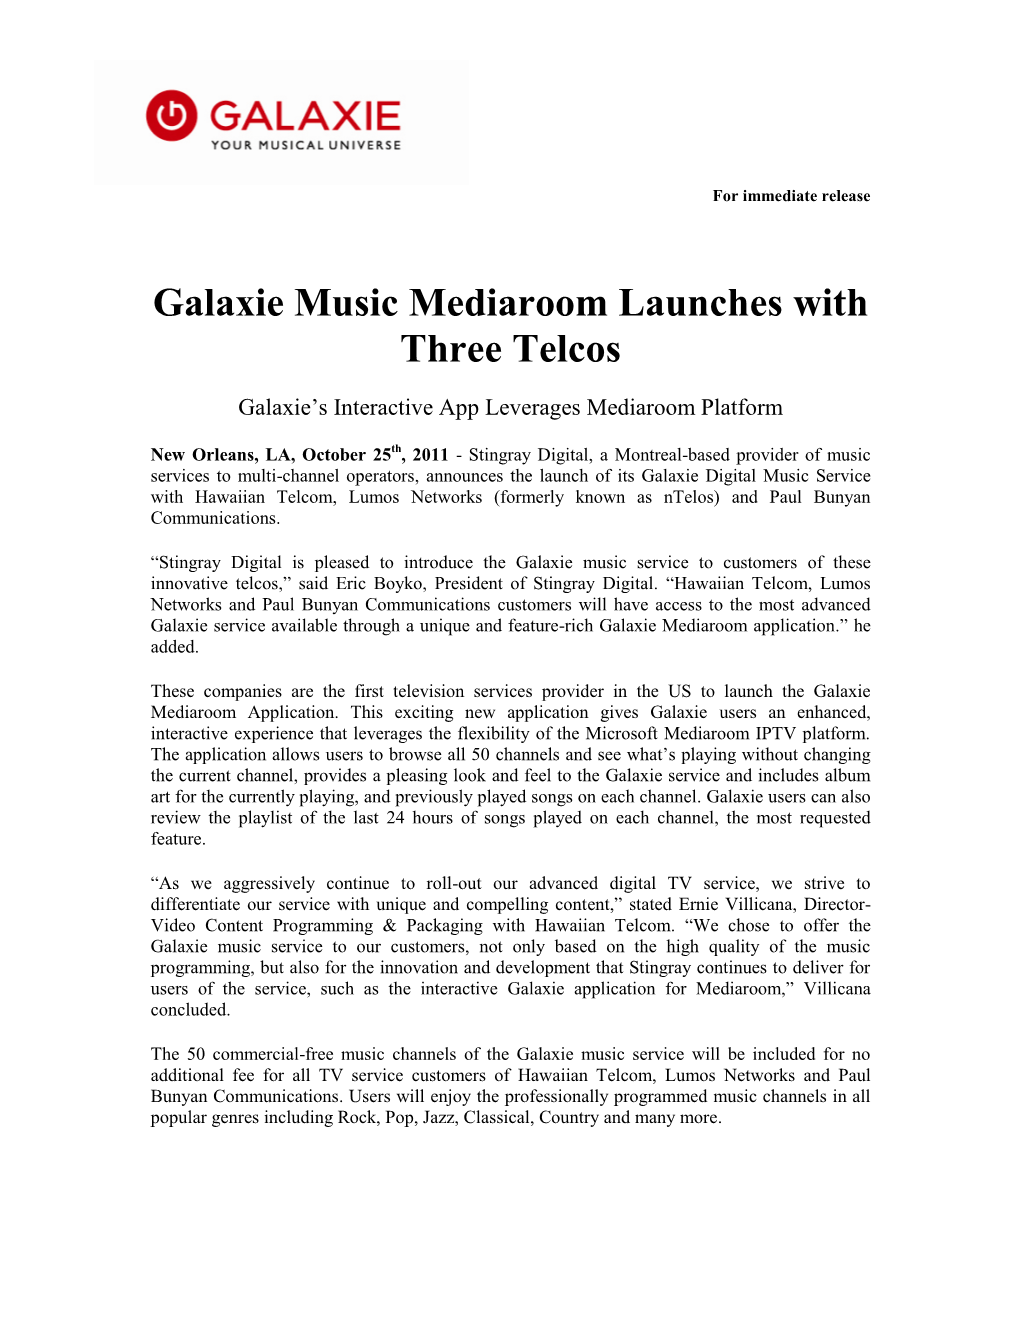 Galaxie Music Mediaroom Launches with Hawaiian